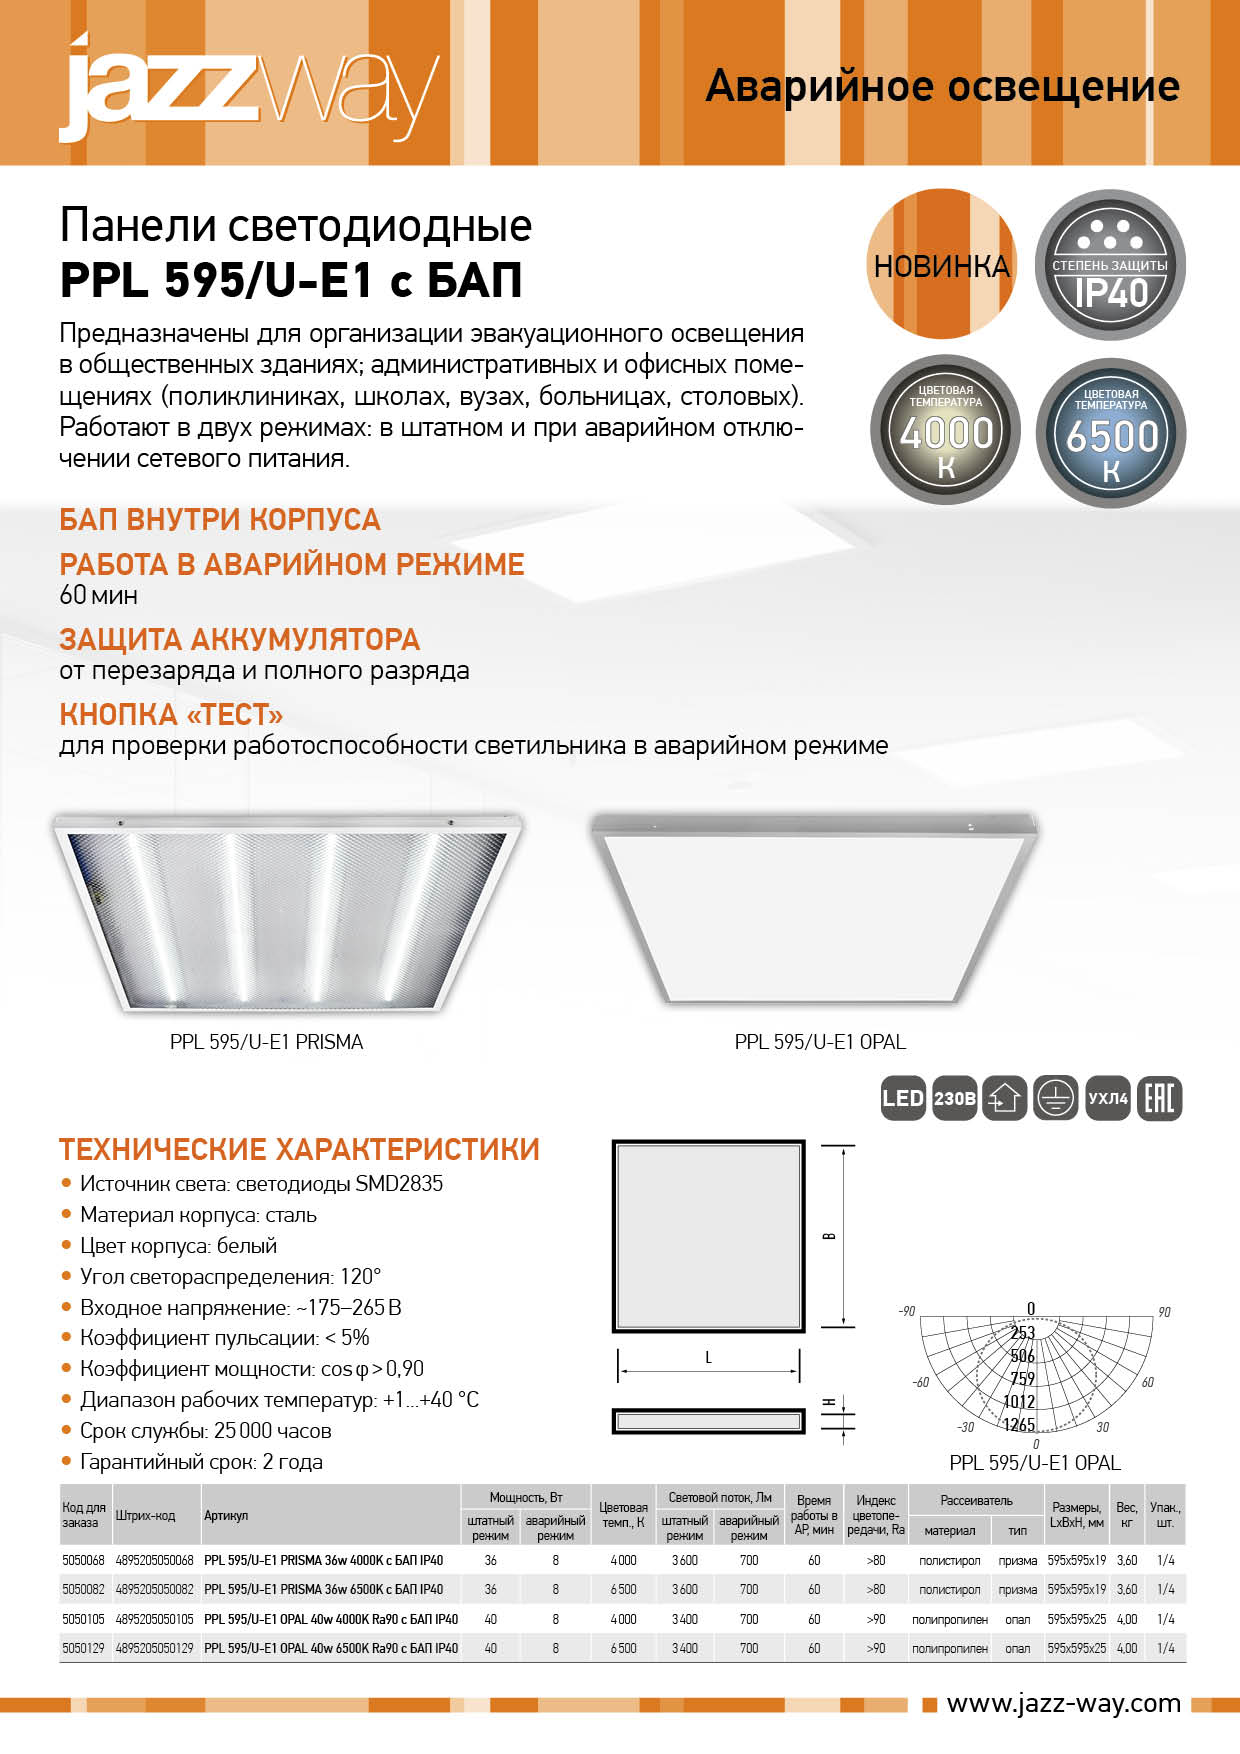 Панели светодиодные PPL 595/U-E1 с БАП